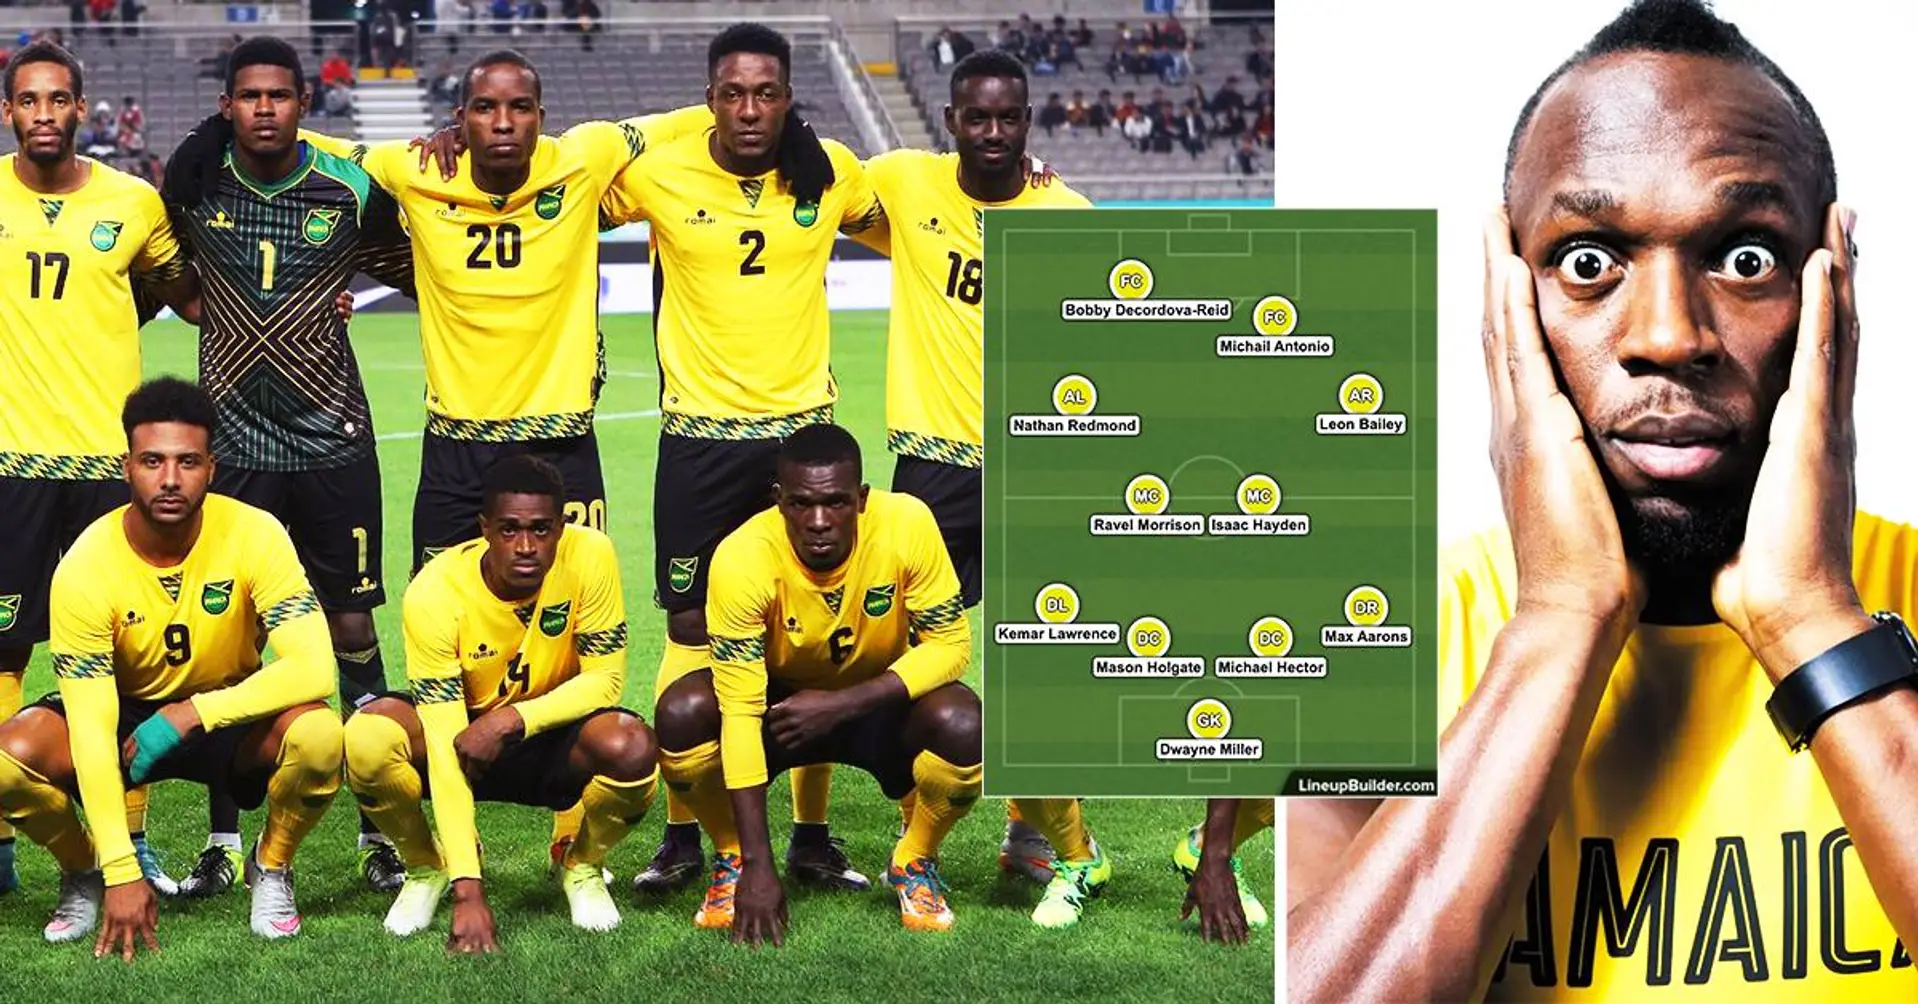 "Sie werden bei der Weltmeisterschaft alle überraschen": Jamaikas potenzielle Startelf begeistert die Fußballfans